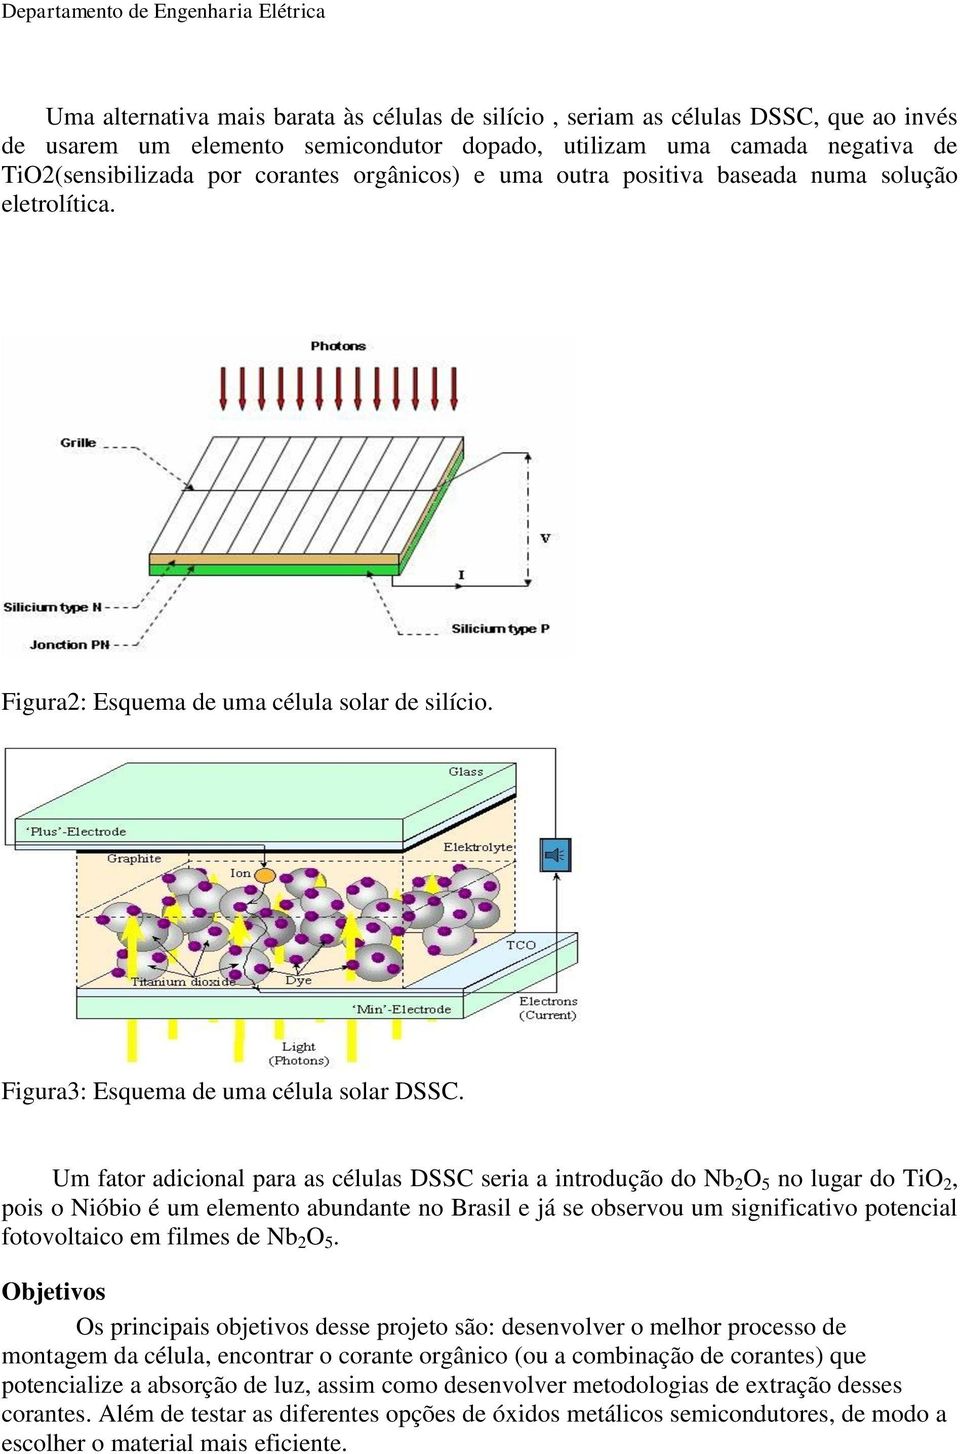 Um fator adicional para as células DSSC seria a introdução do Nb 2 O 5 no lugar do TiO 2, pois o Nióbio é um elemento abundante no Brasil e já se observou um significativo potencial fotovoltaico em